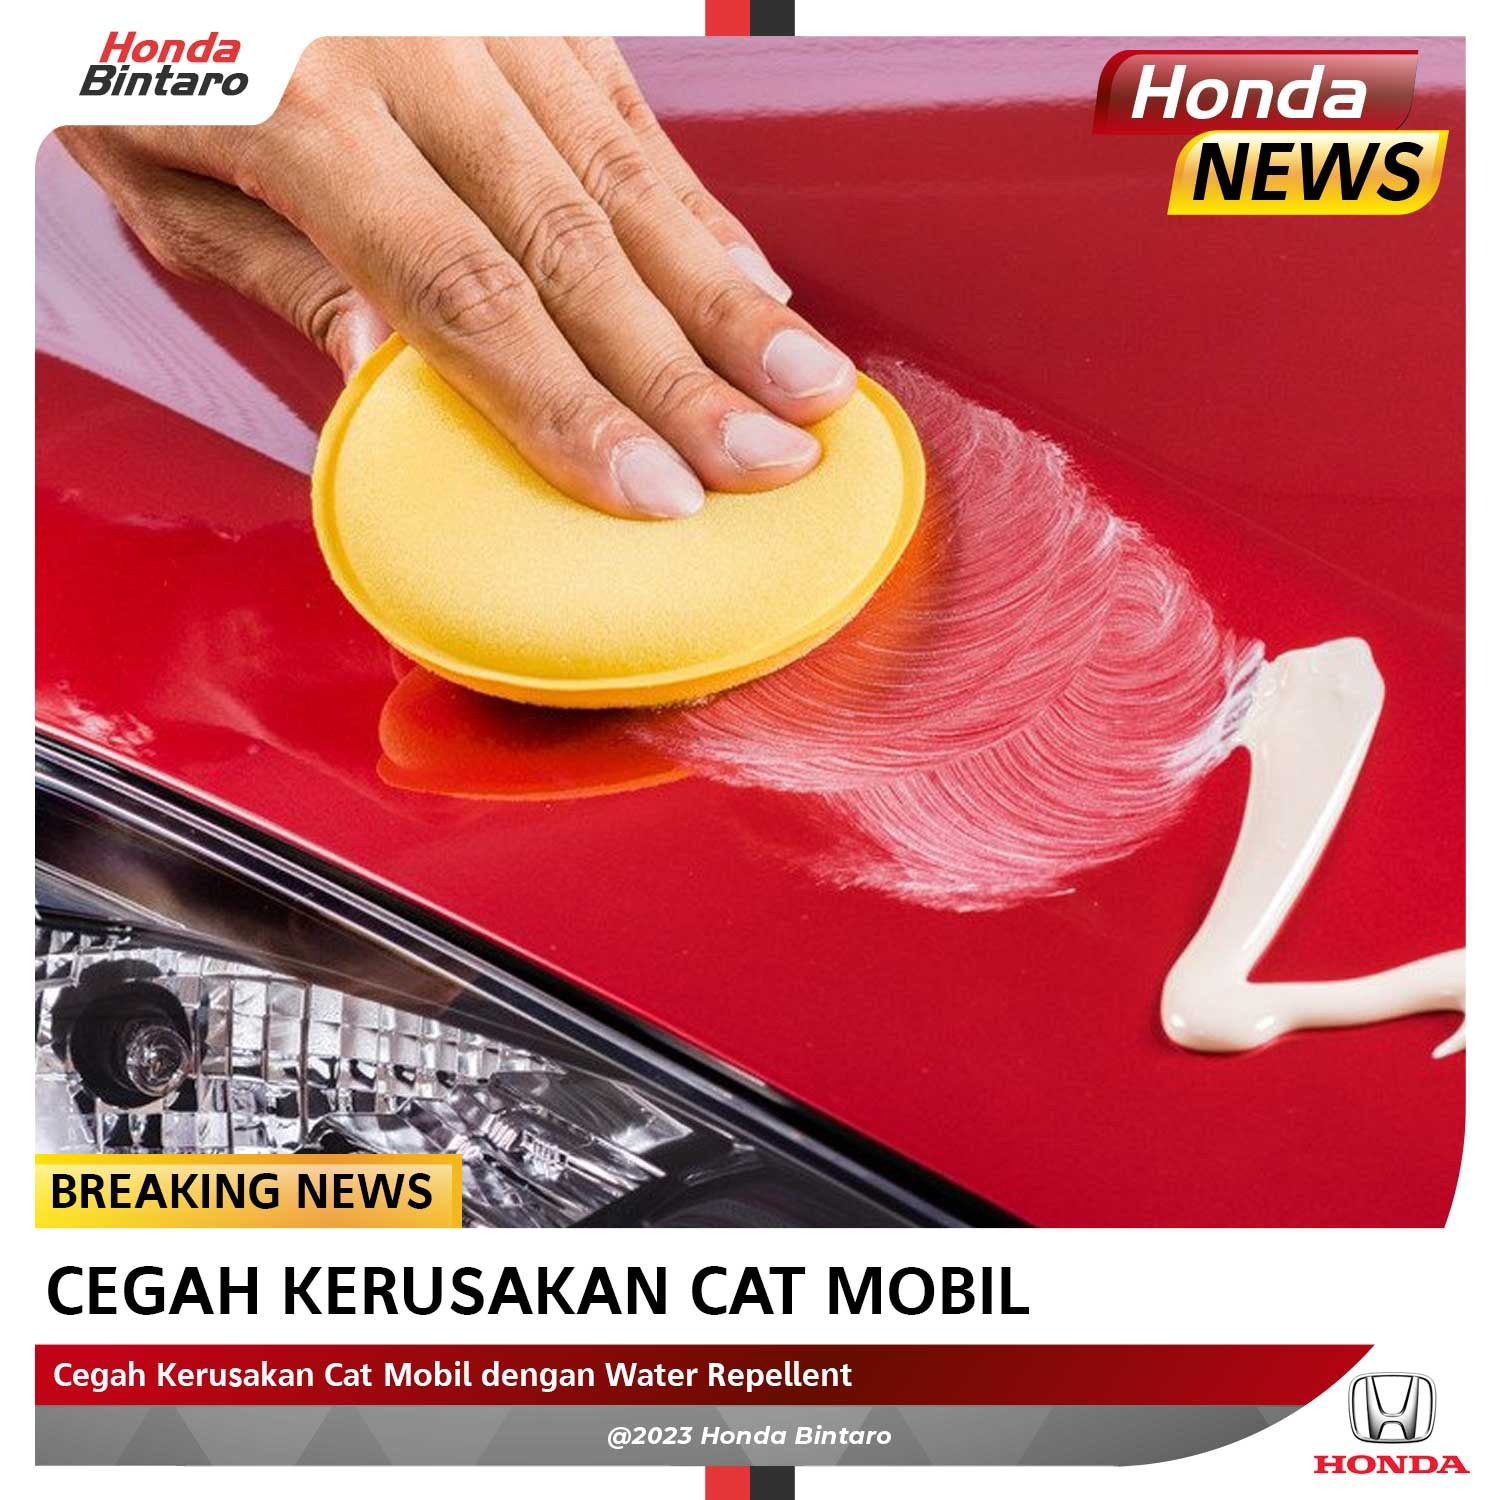 Cegah Kerusakan Cat Mobil dengan Water Repellent